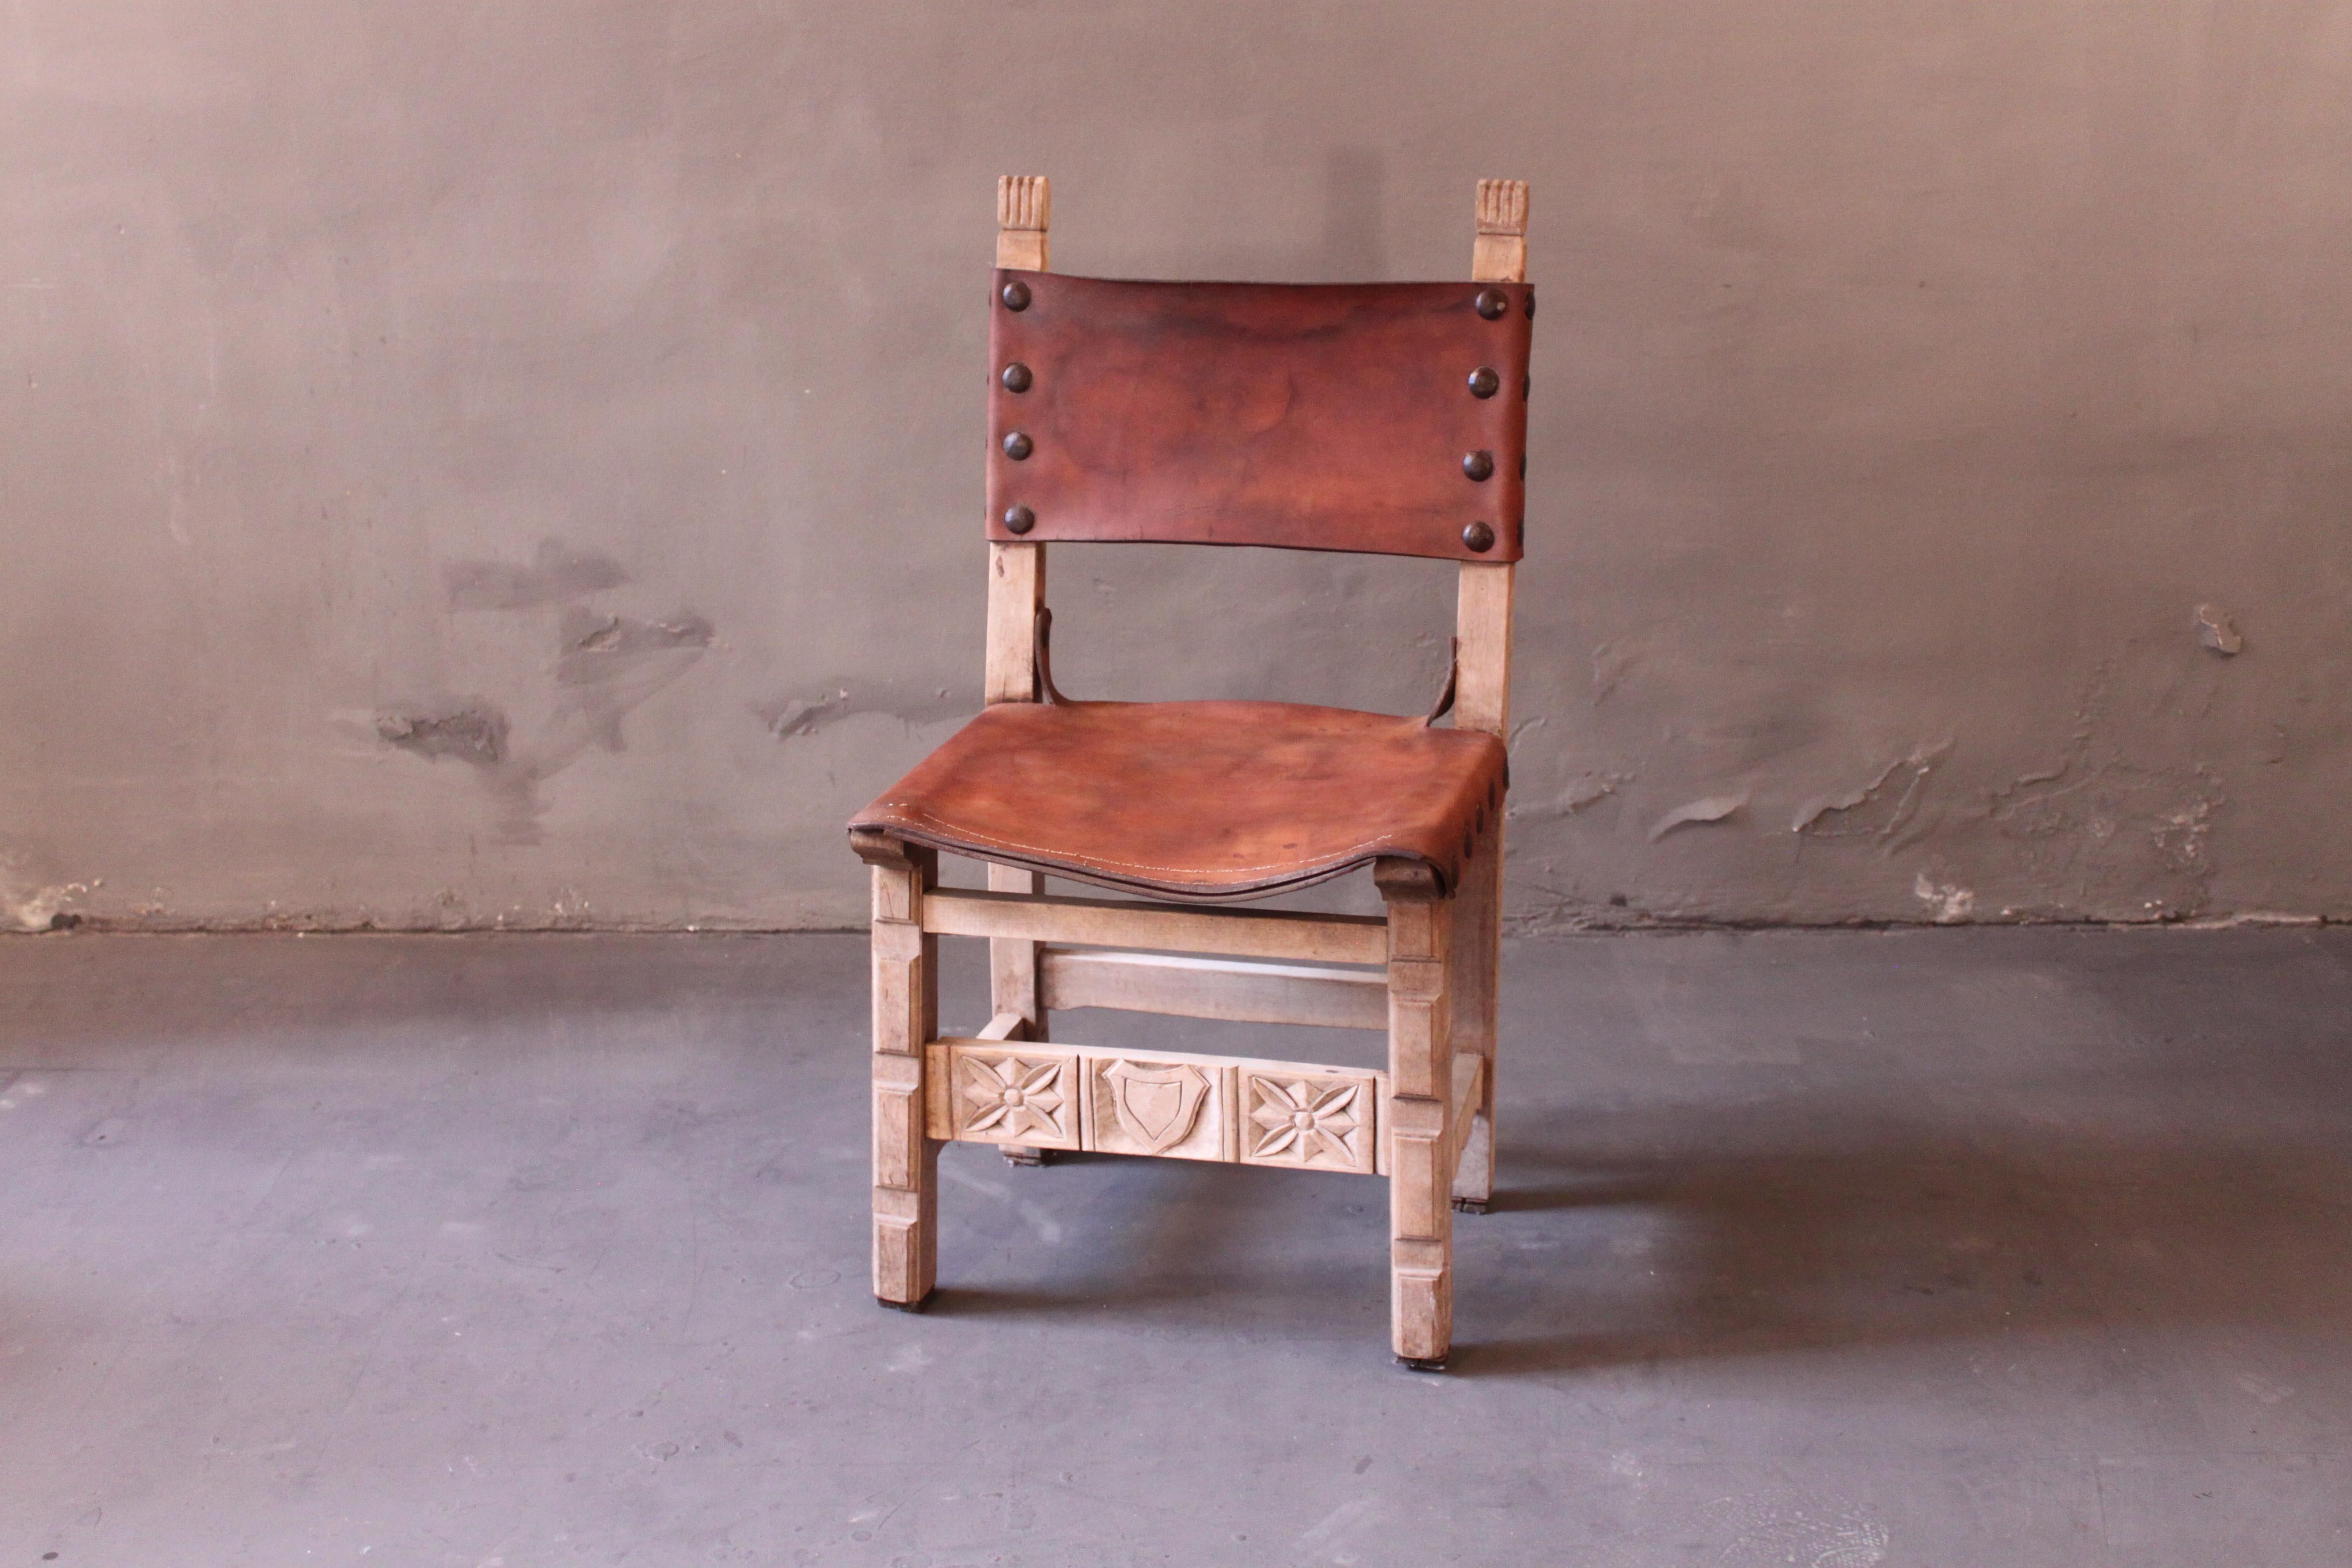 Deutsche Schlossstühle, Sitz aus Leder, Gestell aus Eichenholz. Diese Stühle sind in Landhäusern in ganz Europa zu finden. Sehr stabil, tolle Patina.
Dickes Leder schön patiniert, Massivholzstruktur in dicken Stücken und große Metallpolsternägel,